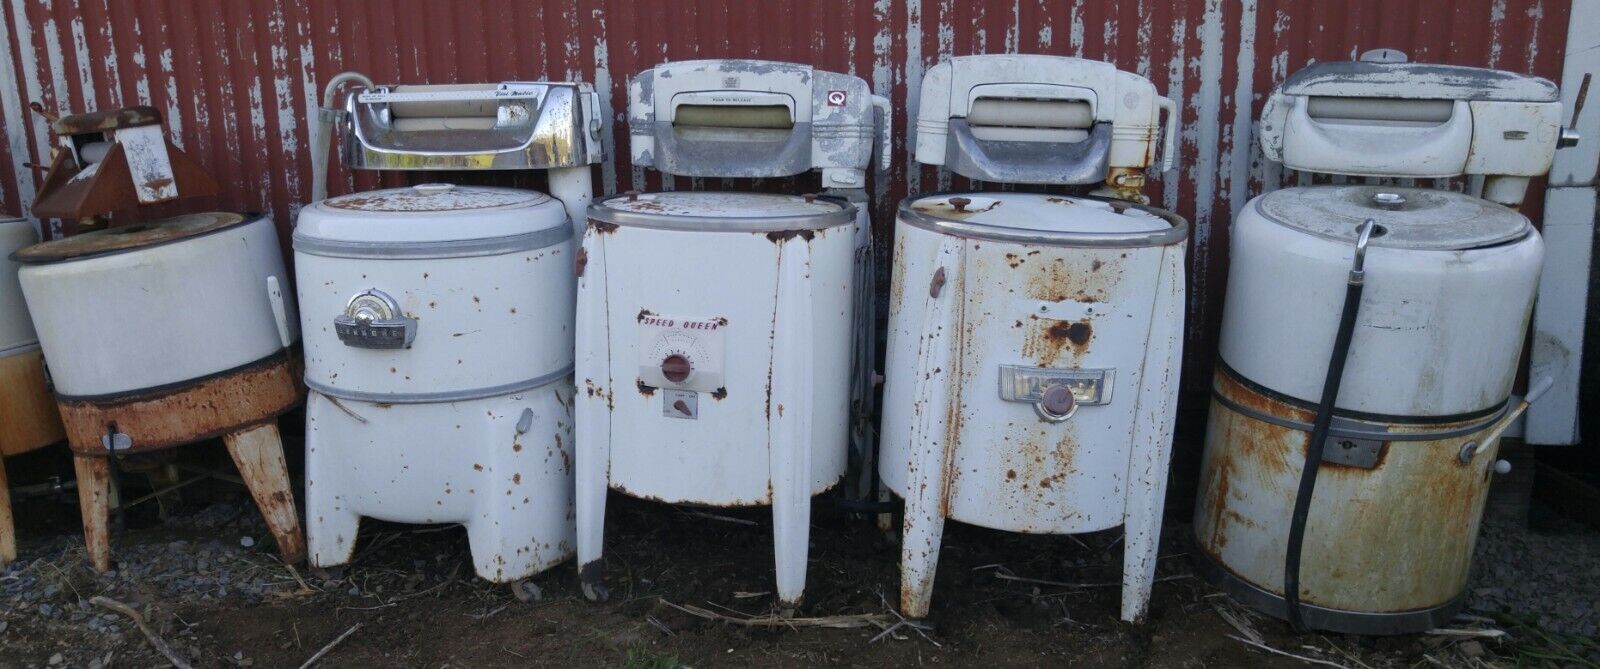 Collection Of 29 Antique Wringer Washing Machines Vintage Ringer Washer Machine Без бренда - фотография #2